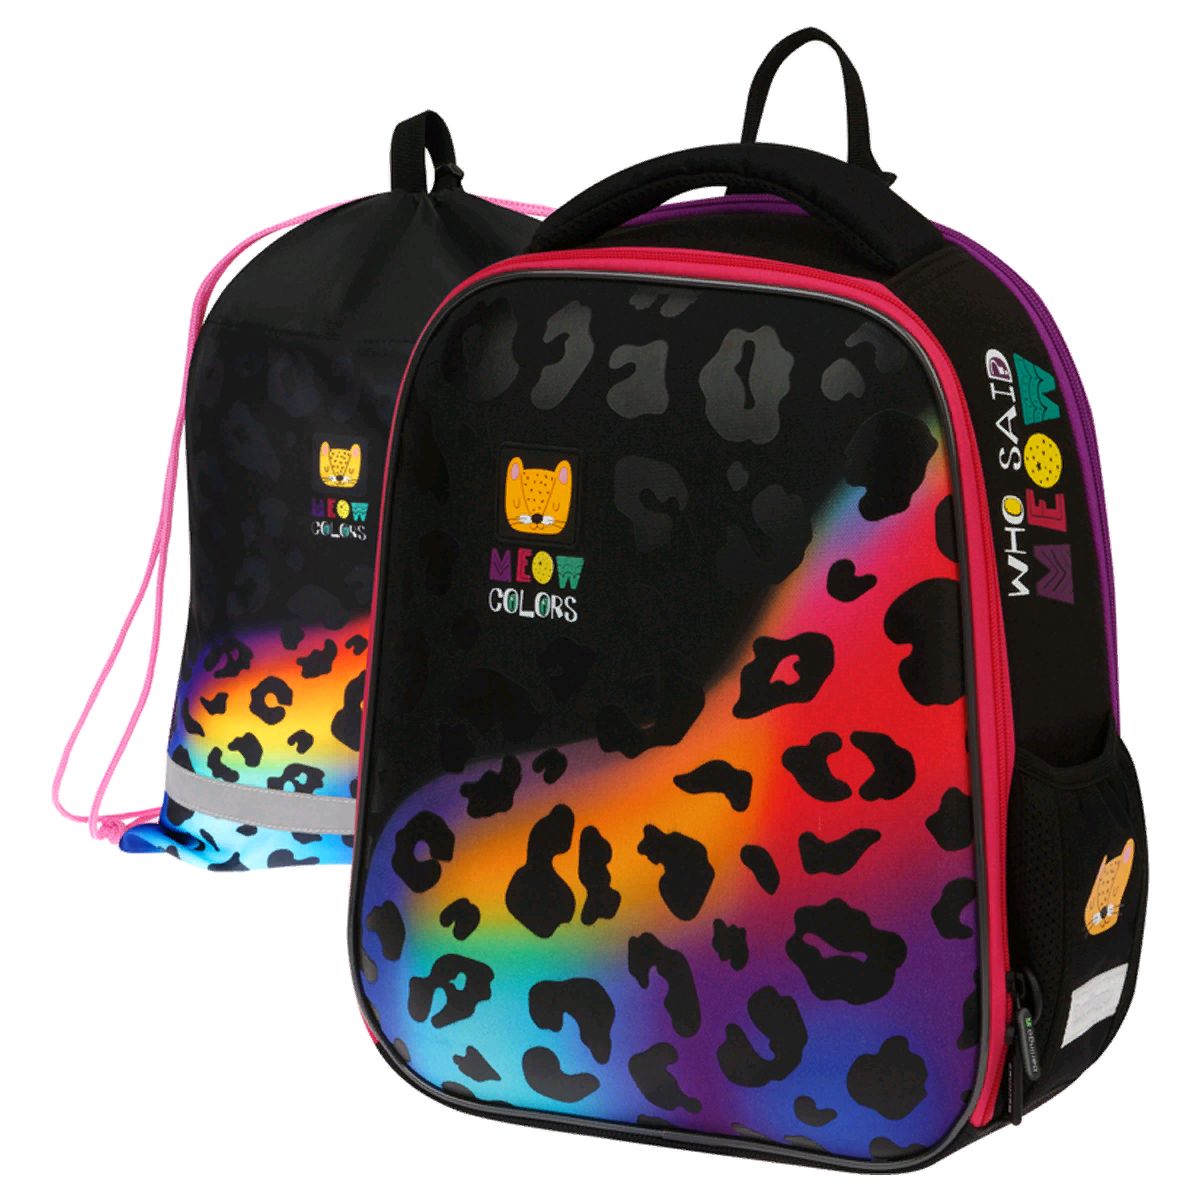 Детские рюкзаки Berlingo Meow colors черный